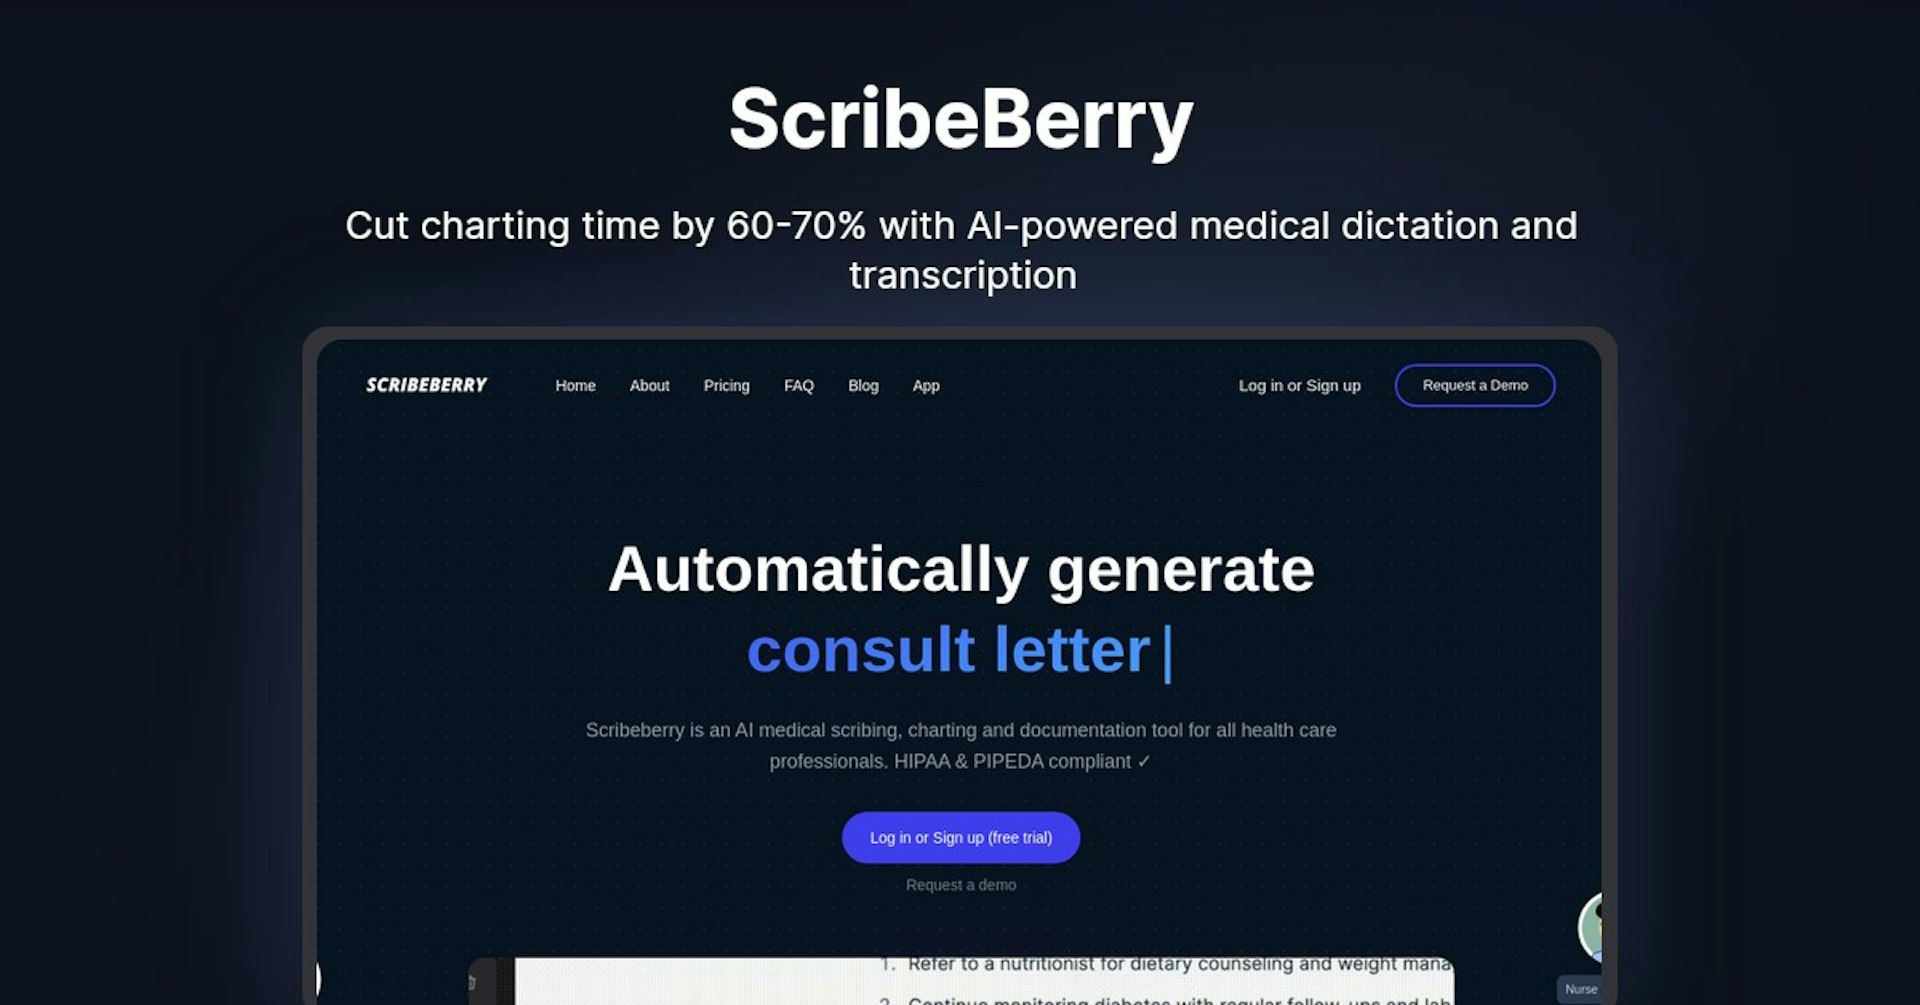 ScribeBerry